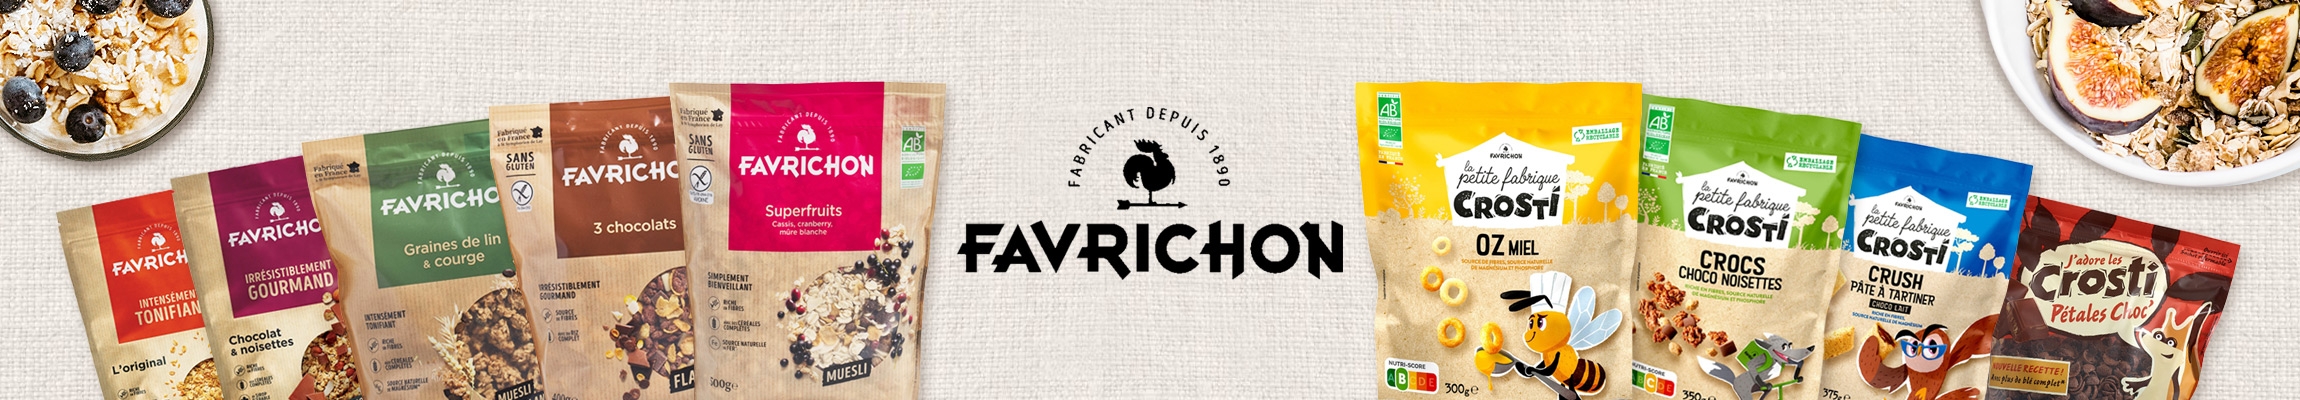 Favrichon 